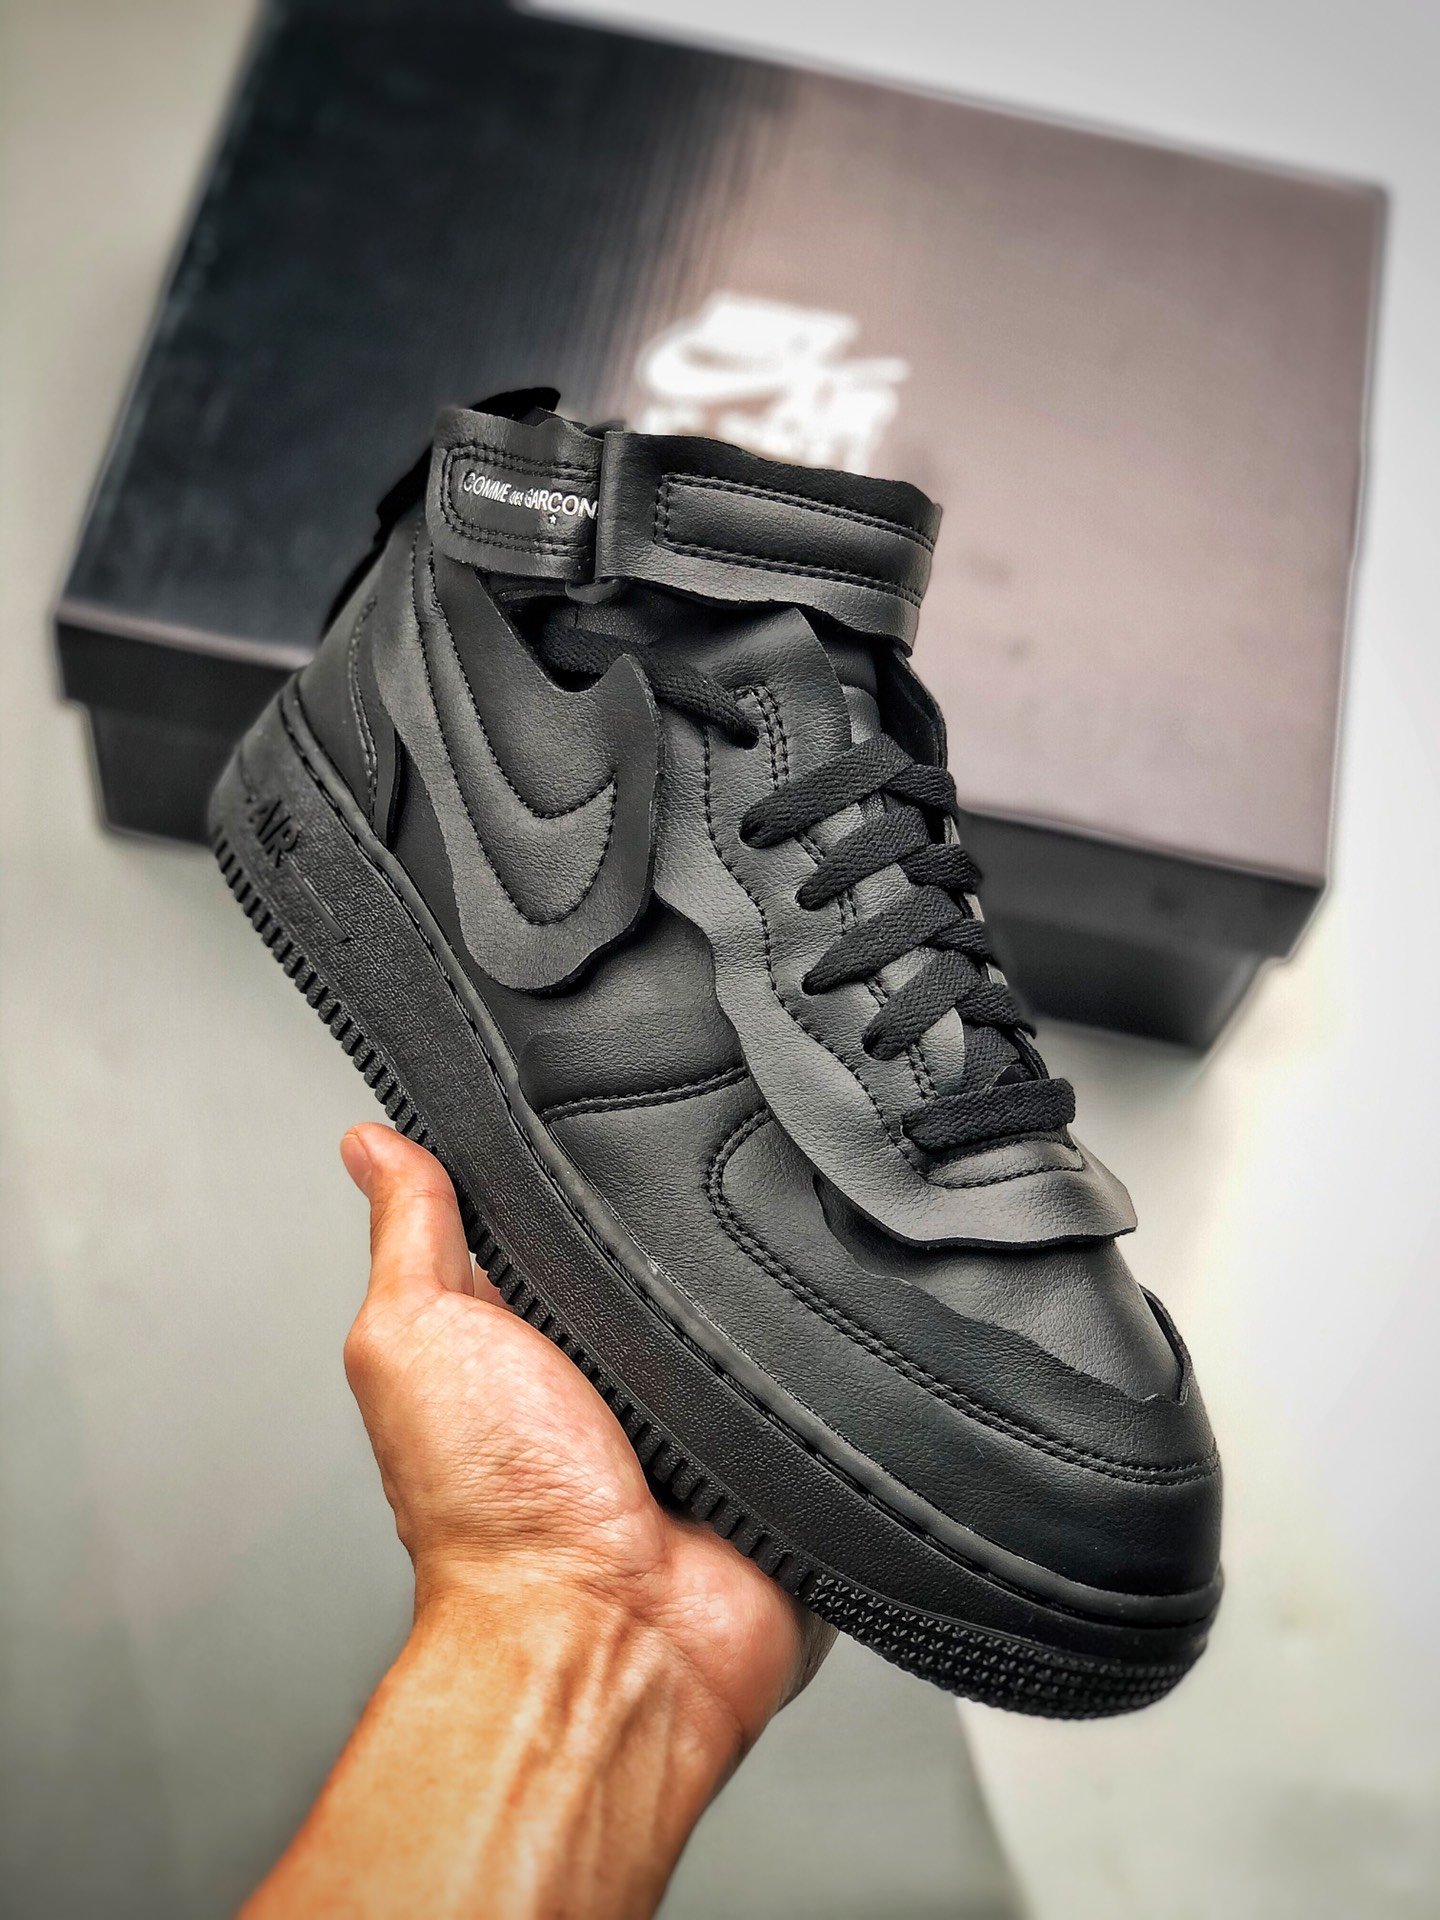 Comme des Garçons x Nike Air Force 1 Mid Black For Sale – Sneaker